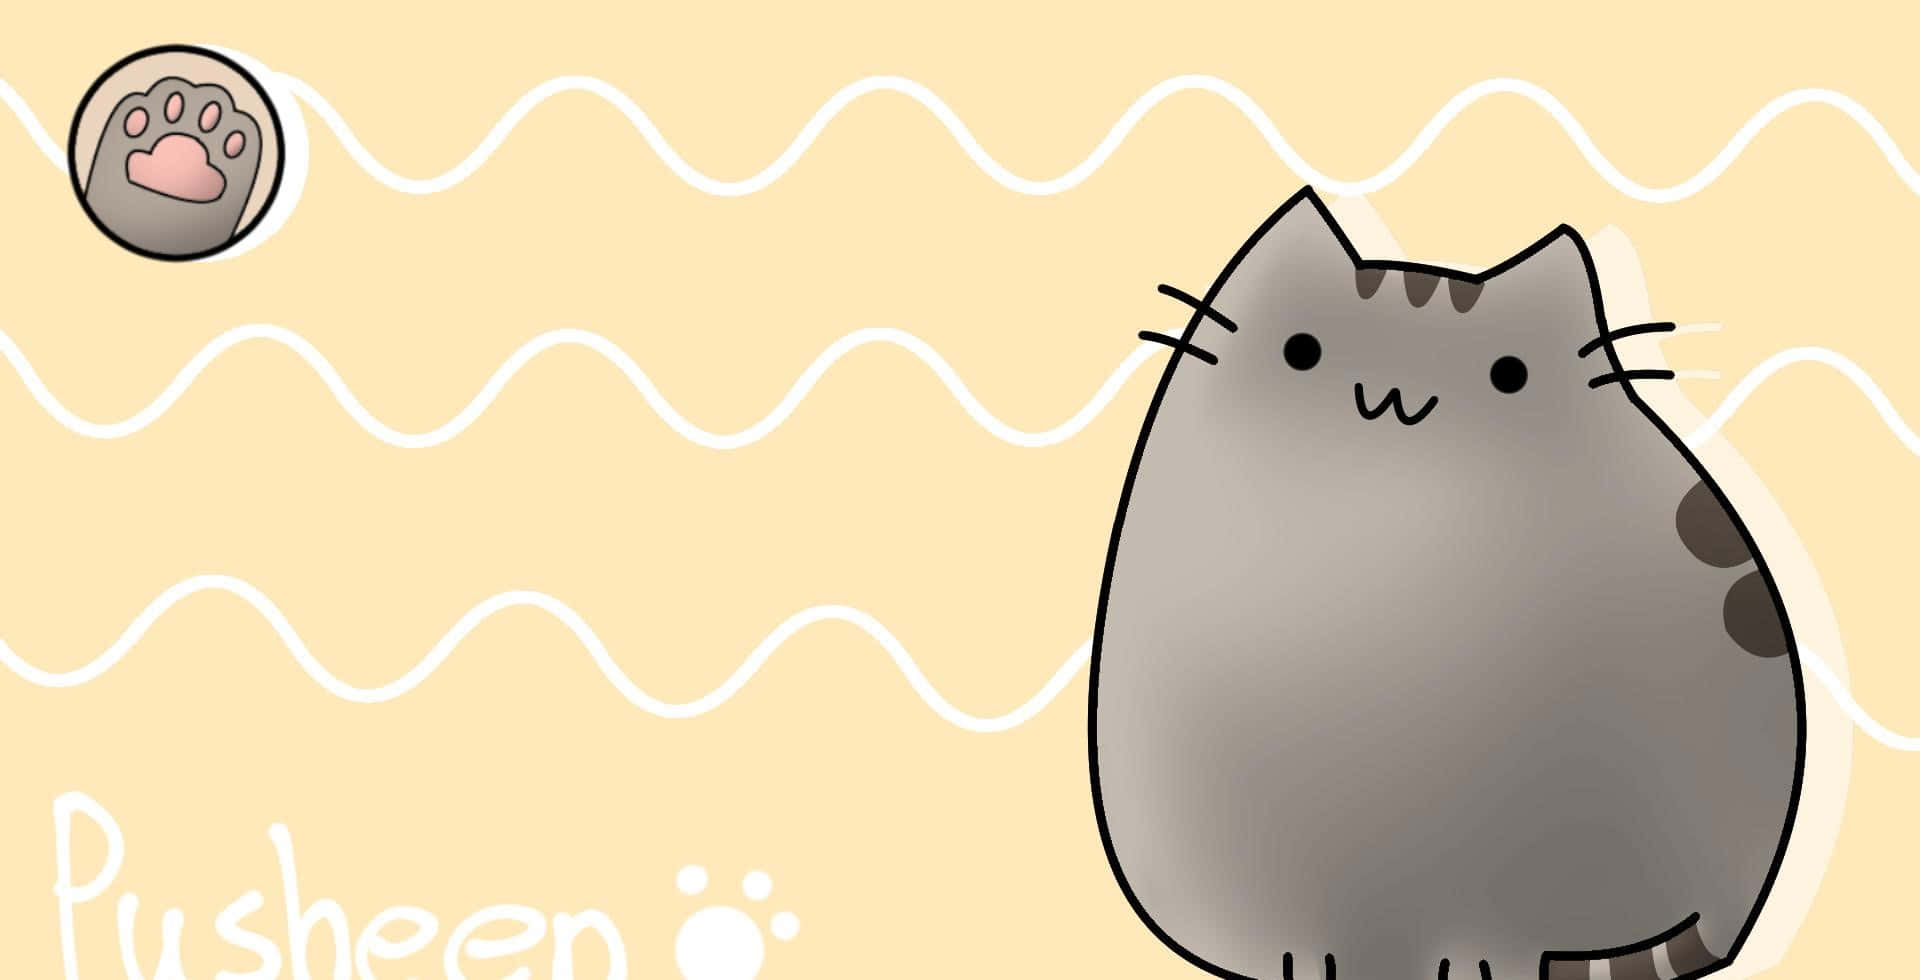 Den søde Pusheen the Cat ser meget sødere ud i det kawaii-stil. Wallpaper